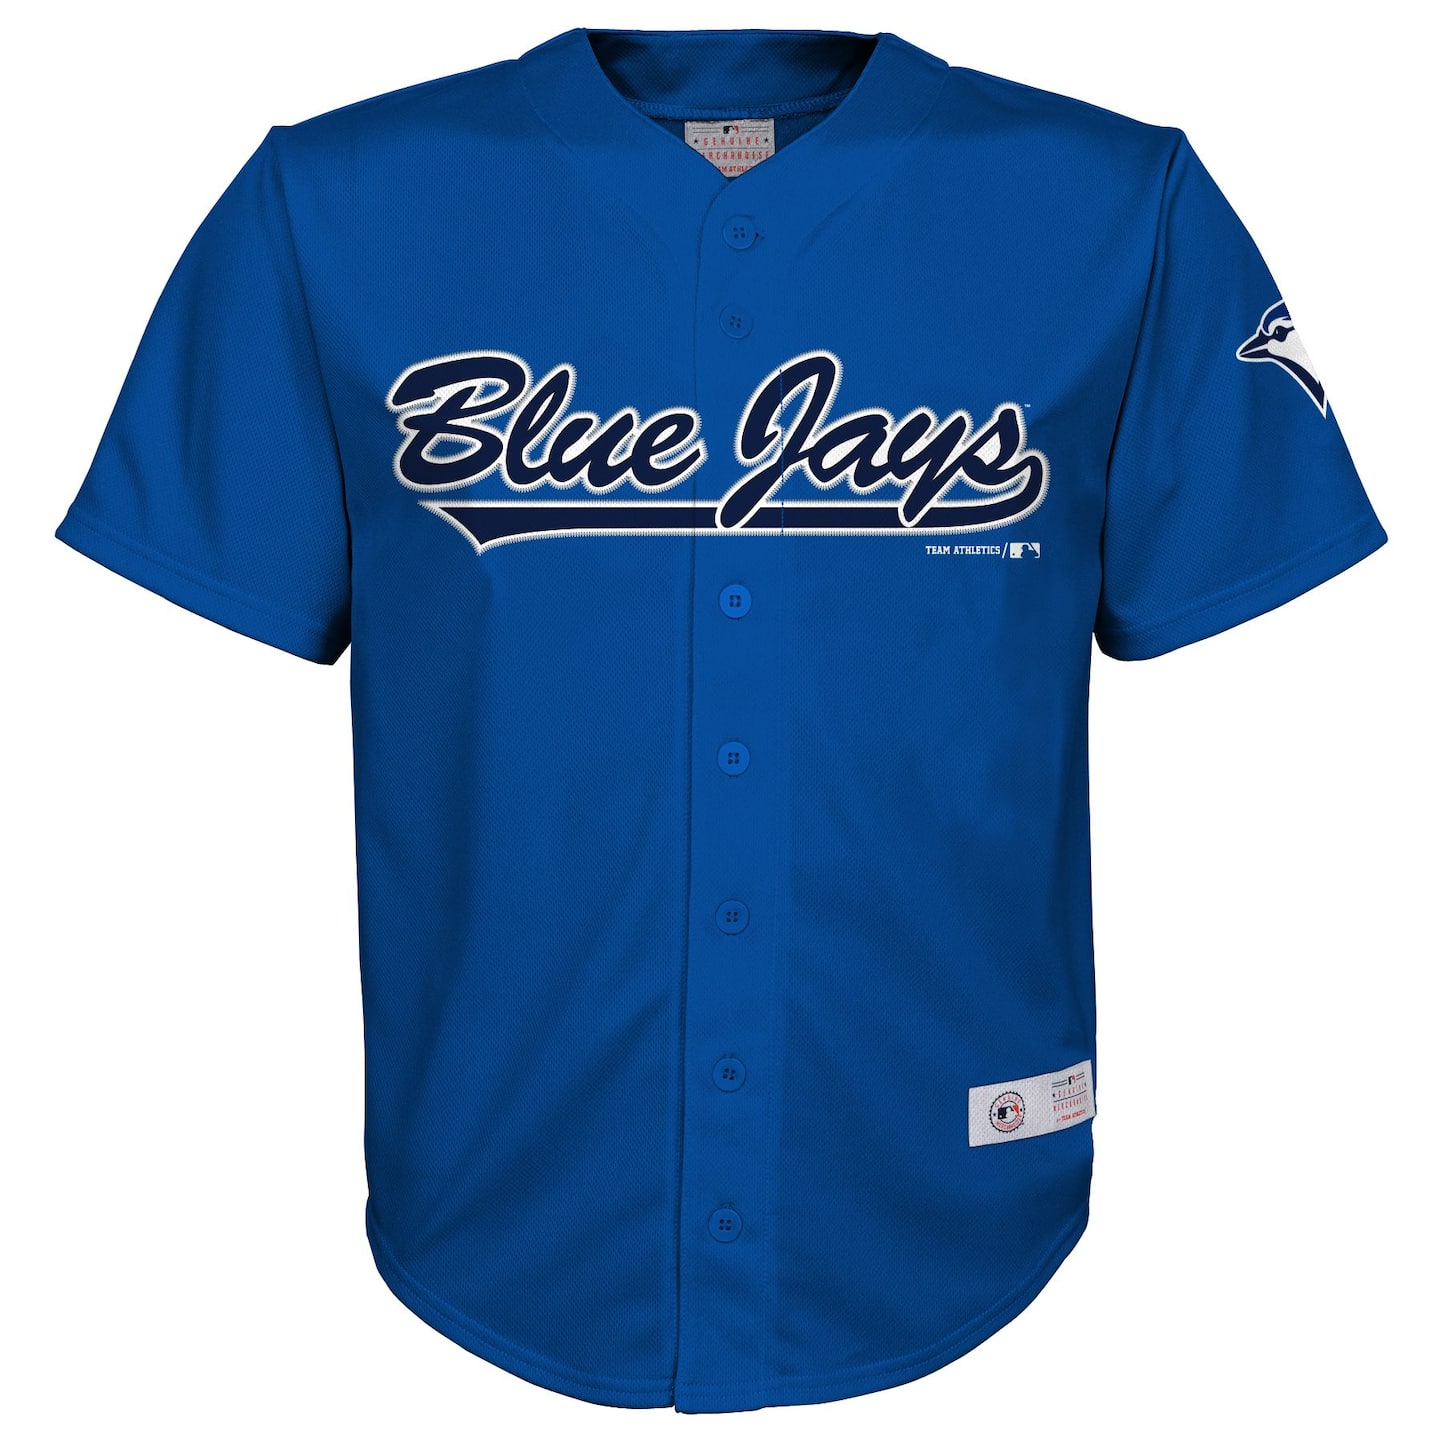 Kids Toronto Blue Jays Jerseys, Kids Blue Jays Baseball Jersey, Uniforms